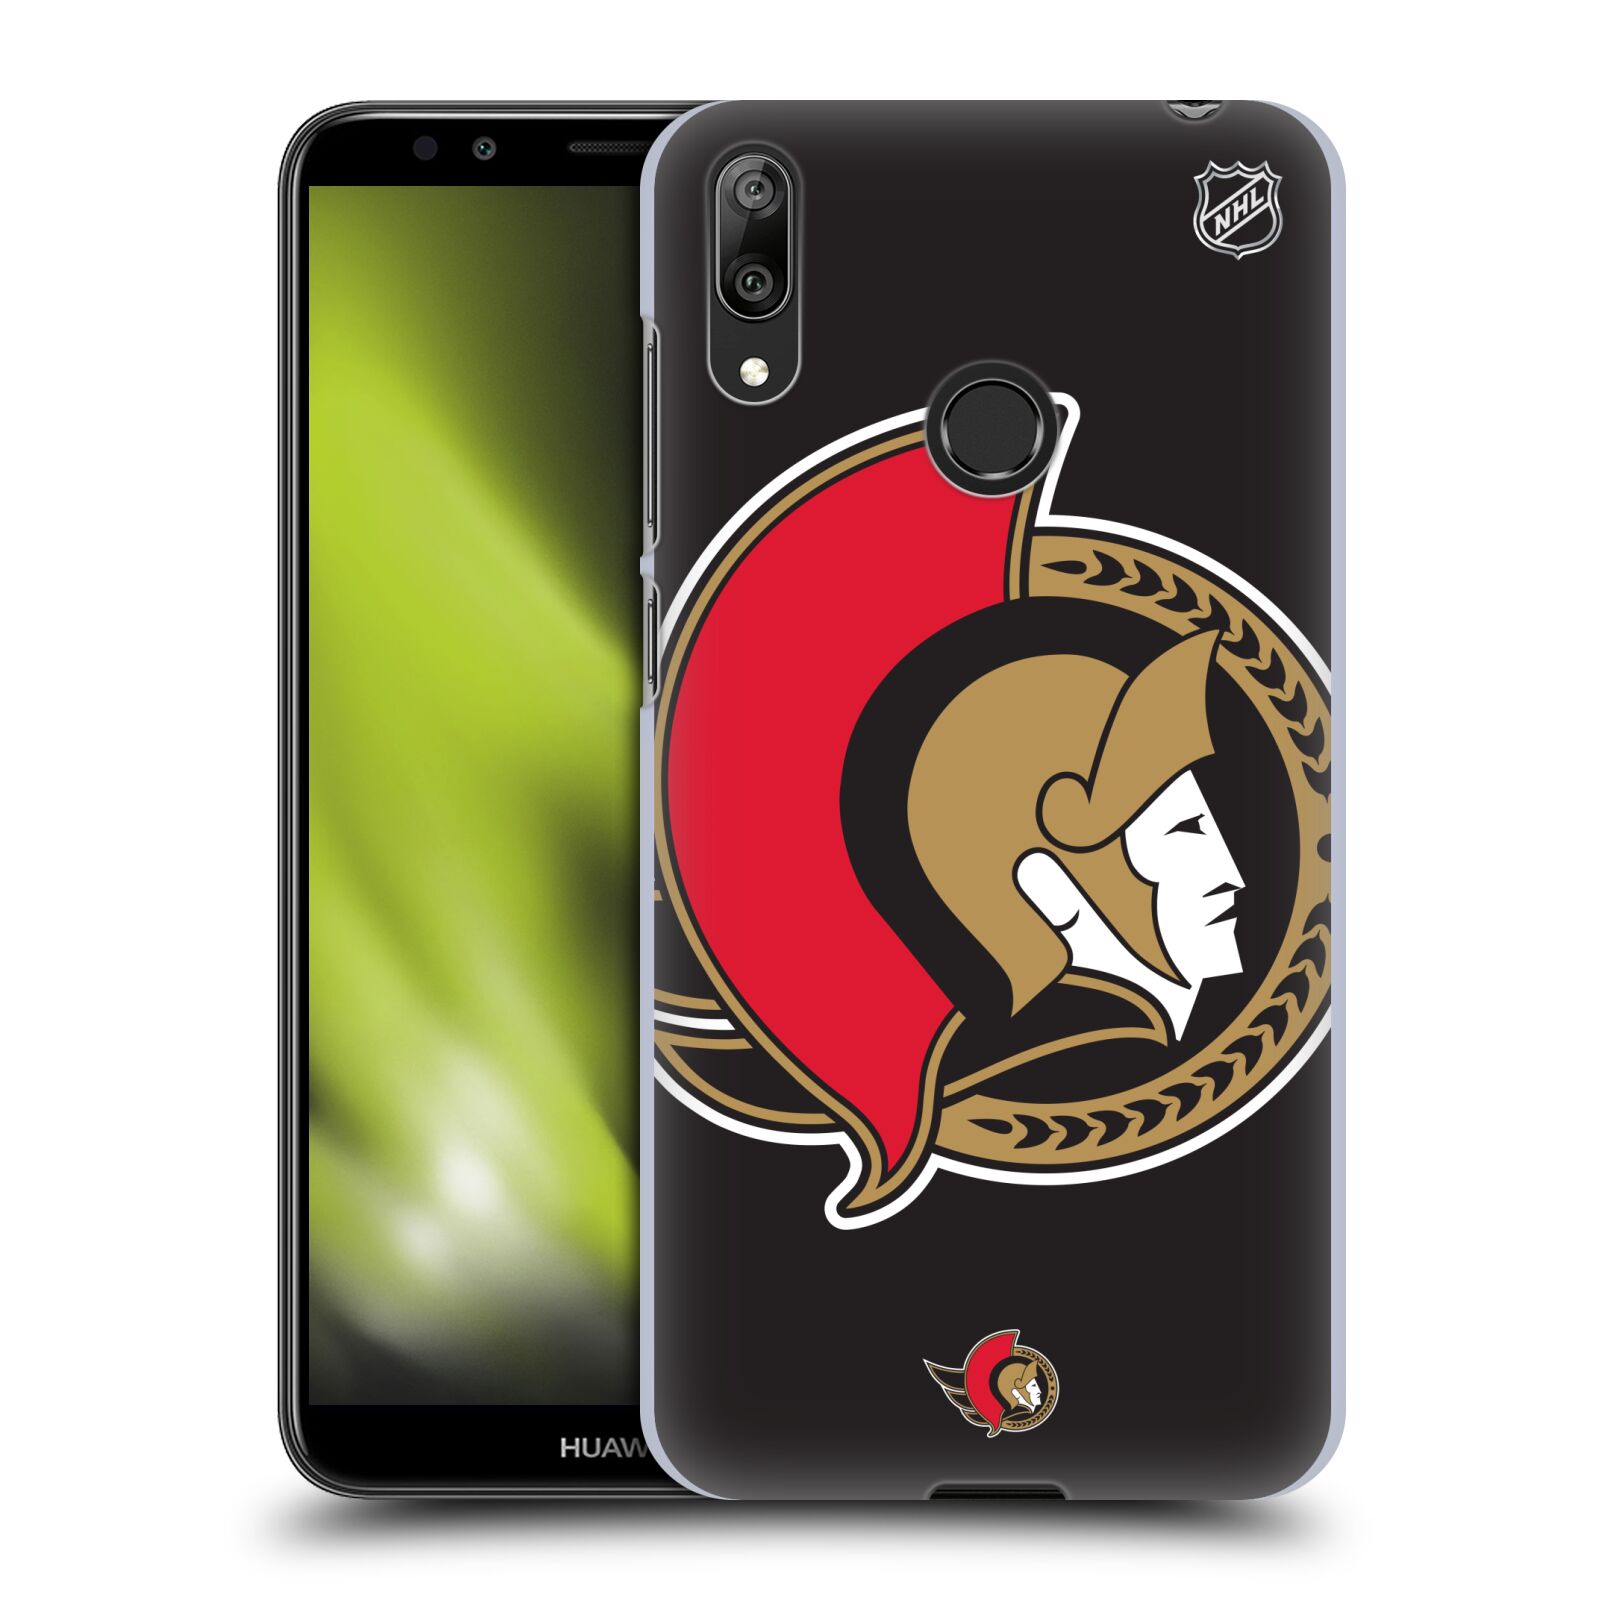 Pouzdro na mobil Huawei Y7 2019 - HEAD CASE - Hokej NHL - Ottawa Senators - Velký znak